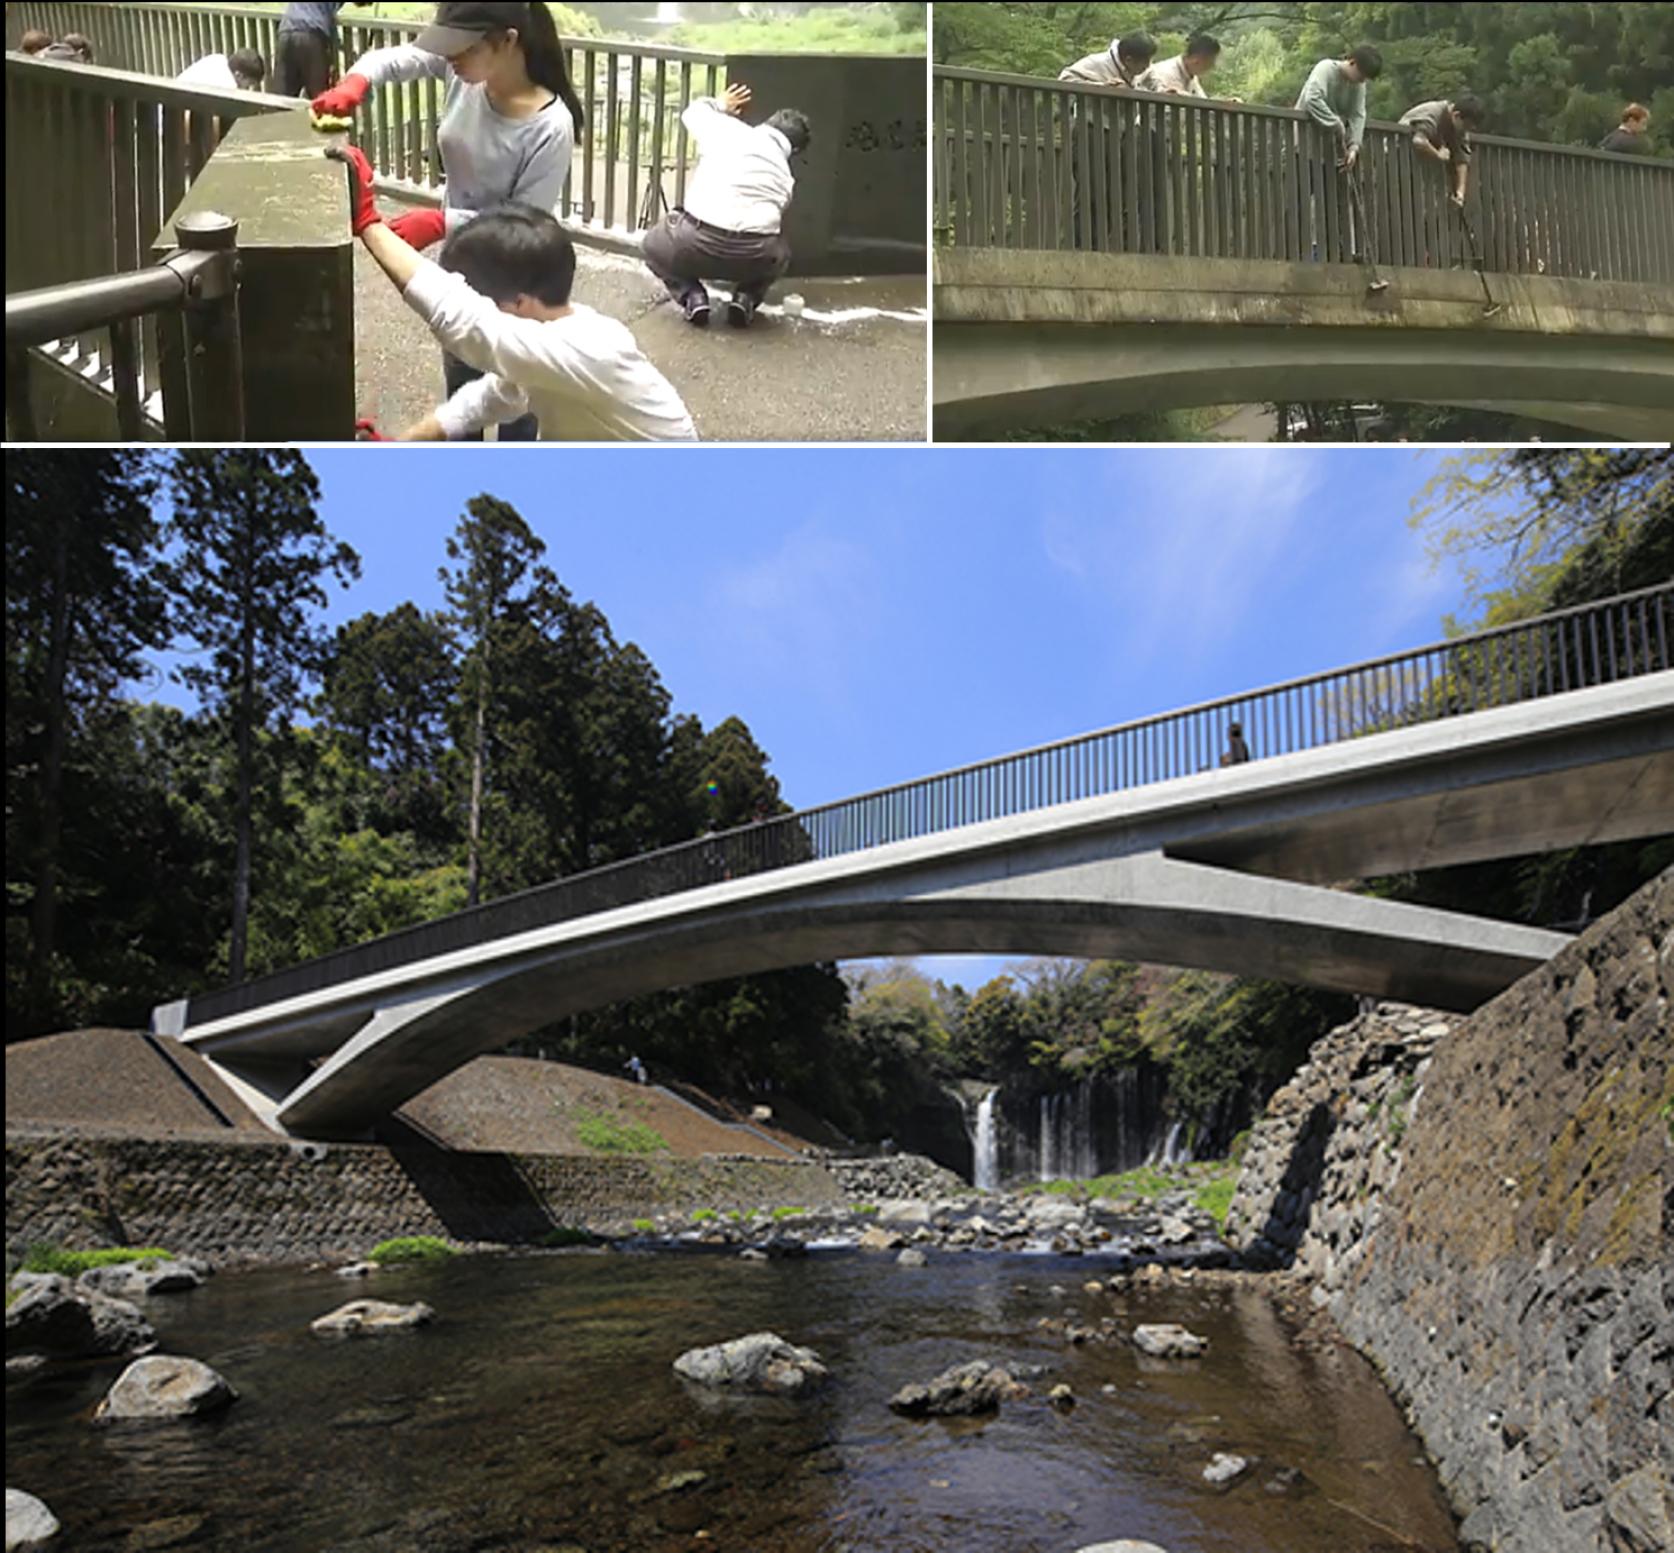 【静岡朝日テレビ】土木工学科 構造・デザイン研究室（関文夫教授）及びブリッジ工房の学生達による「滝見橋」清掃活動の様子が紹介されました。